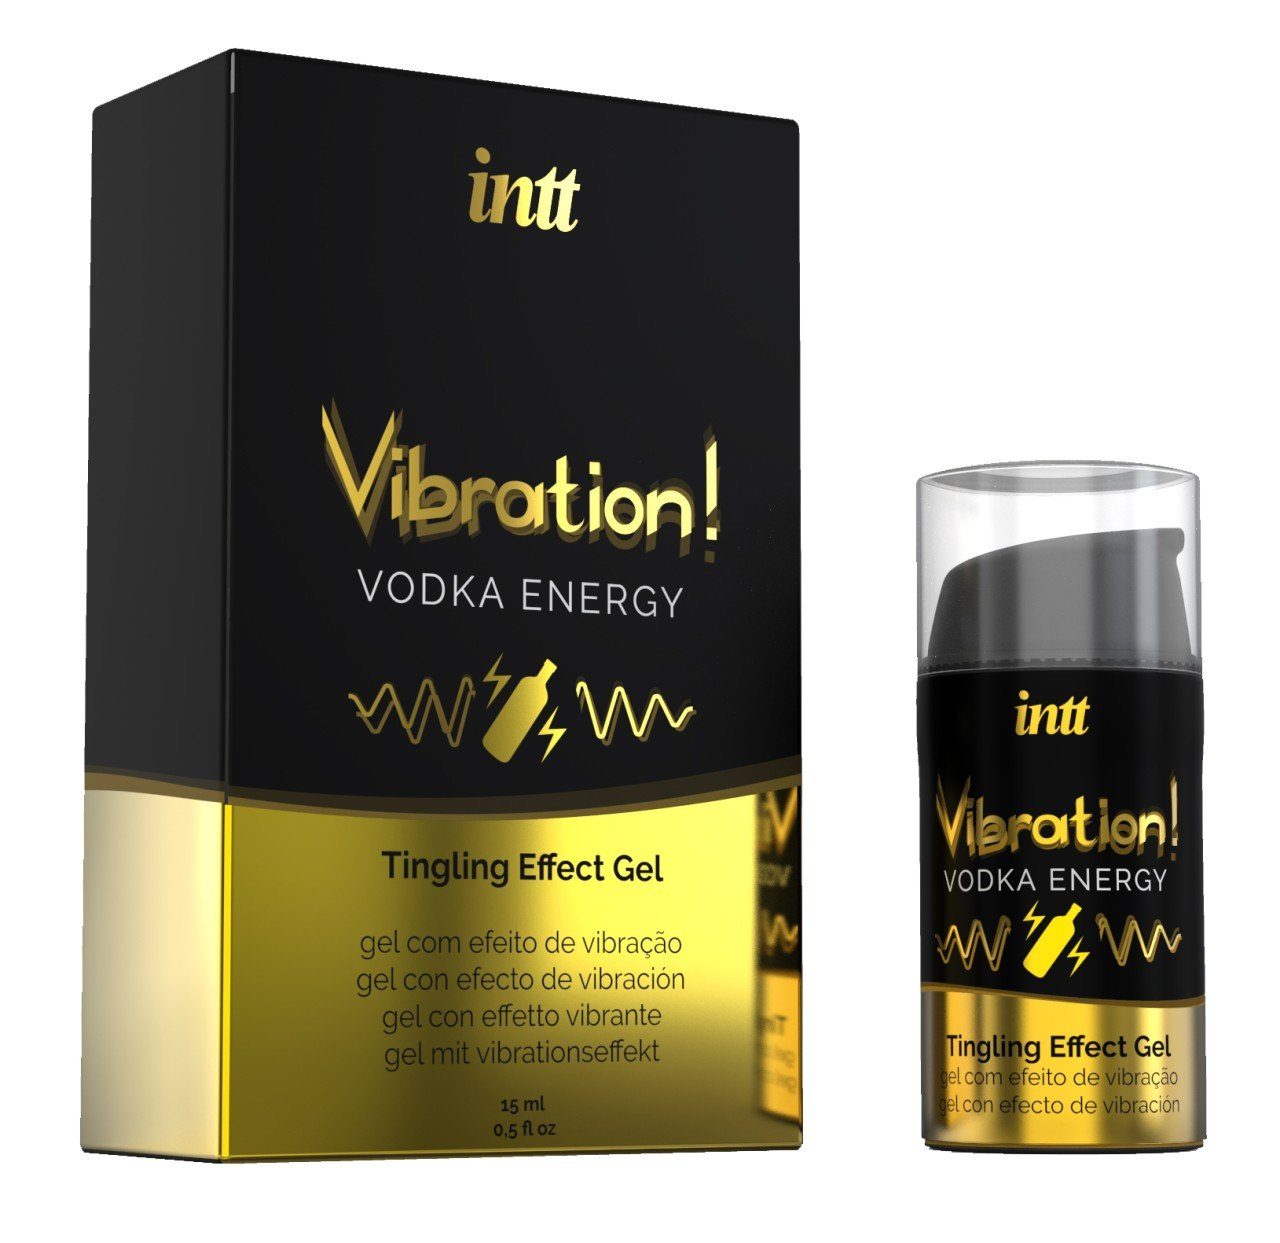 INTT Gleitgel 15 ml - 15ml Vodka Liquid intt Vibration